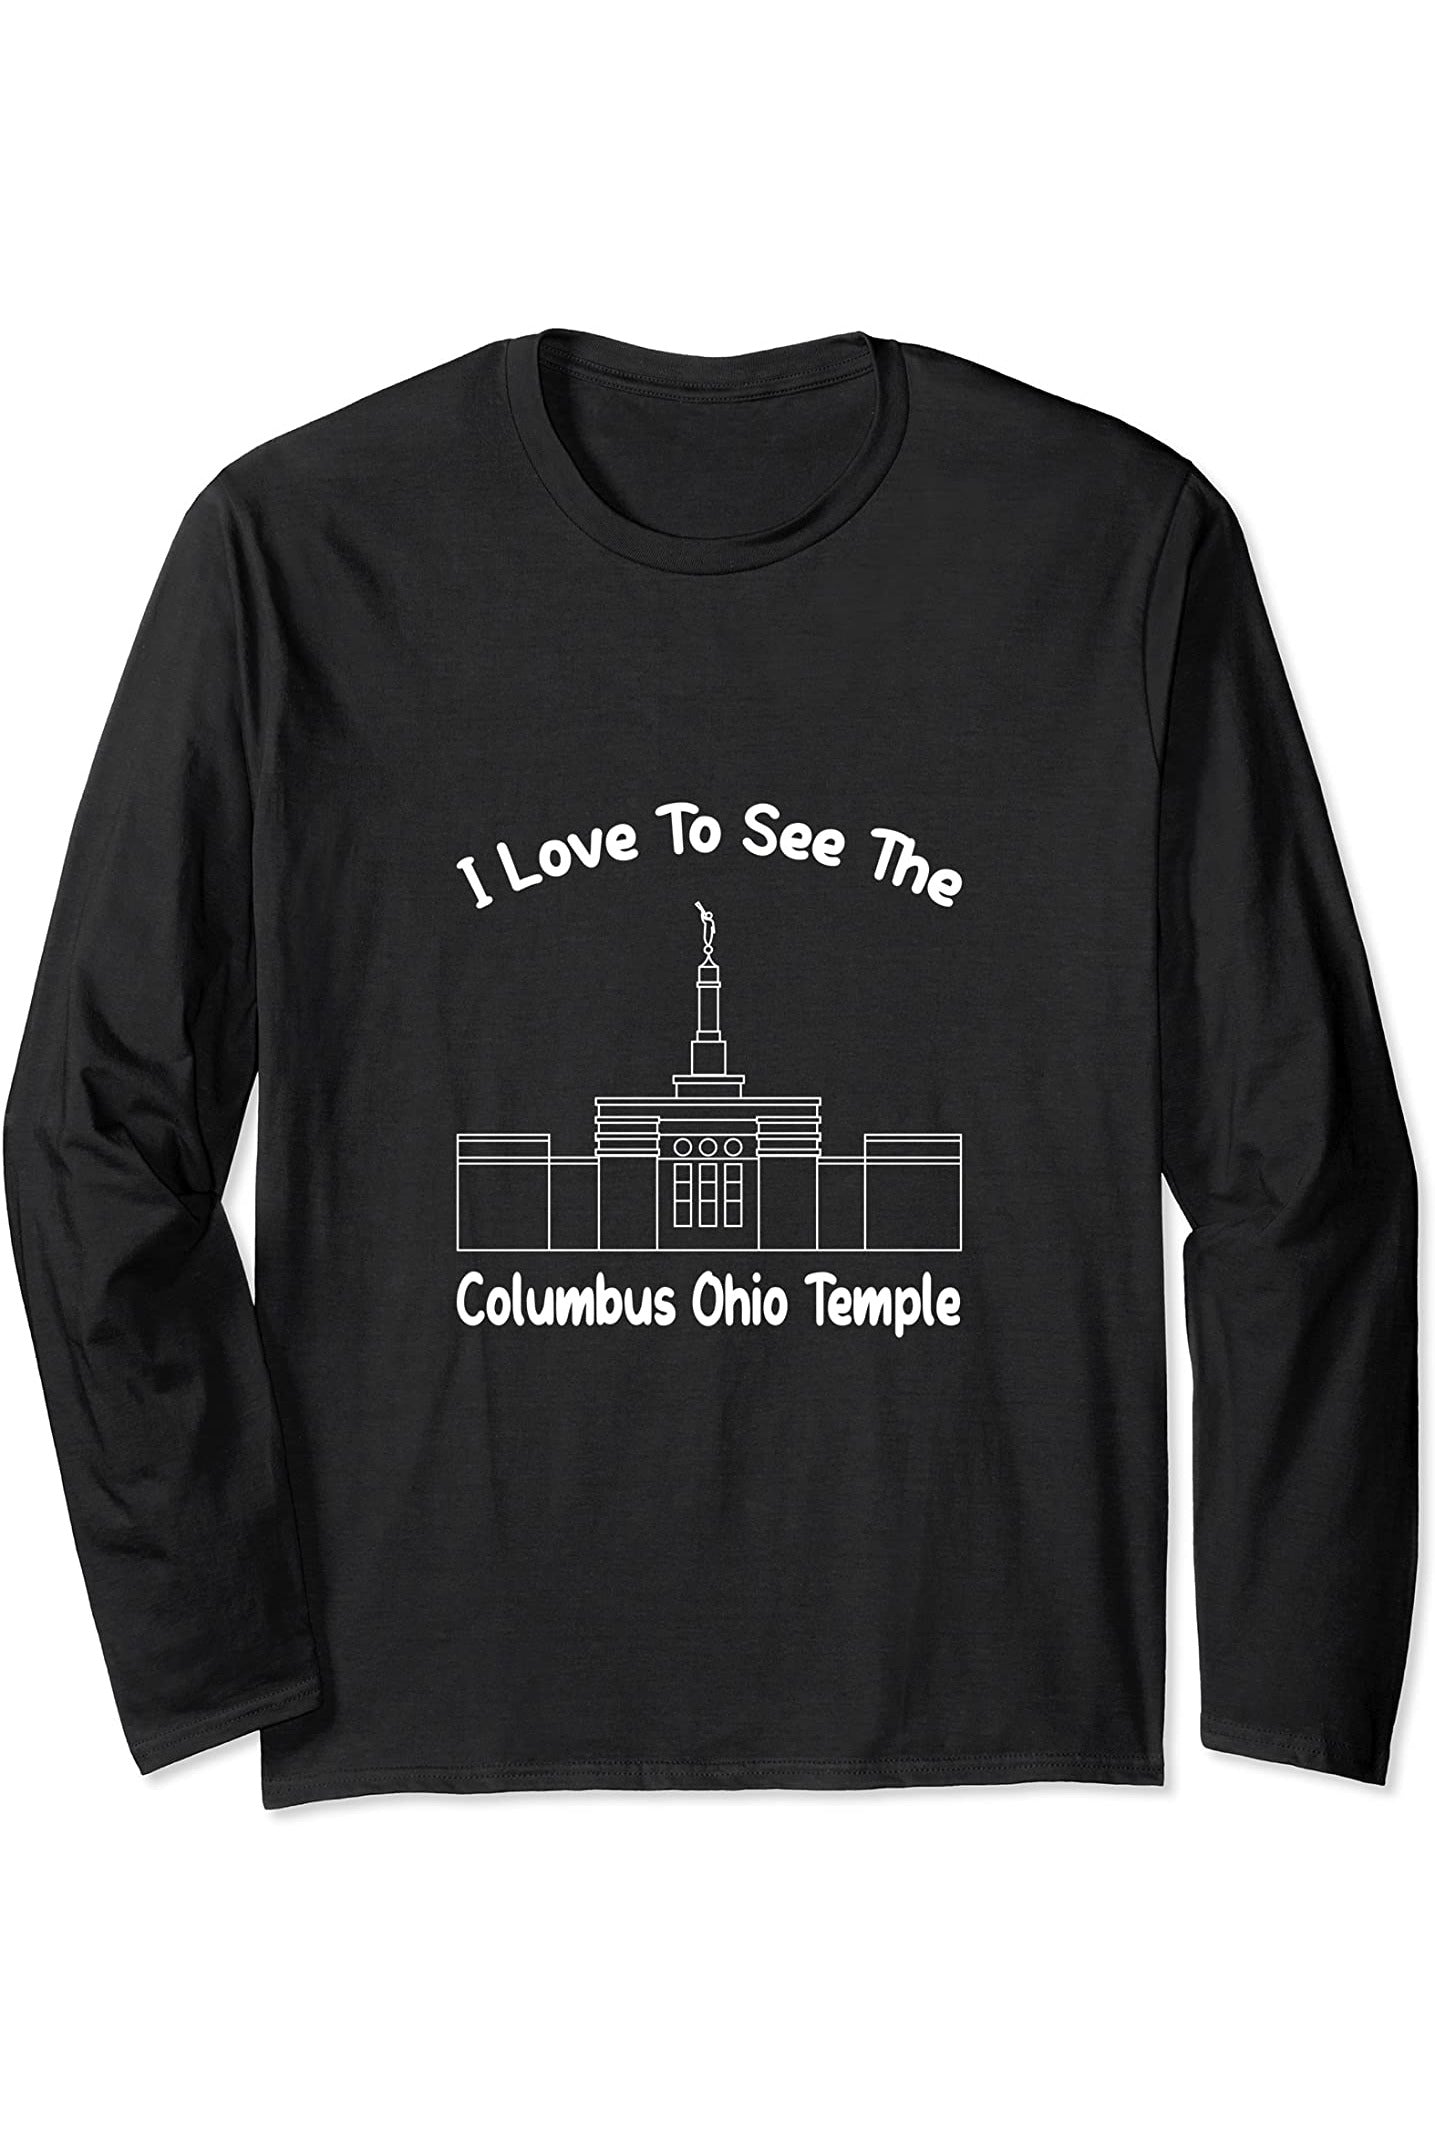 Columbus Ohio Temple Long Sleeve T-Shirt - Primary Style (English) US